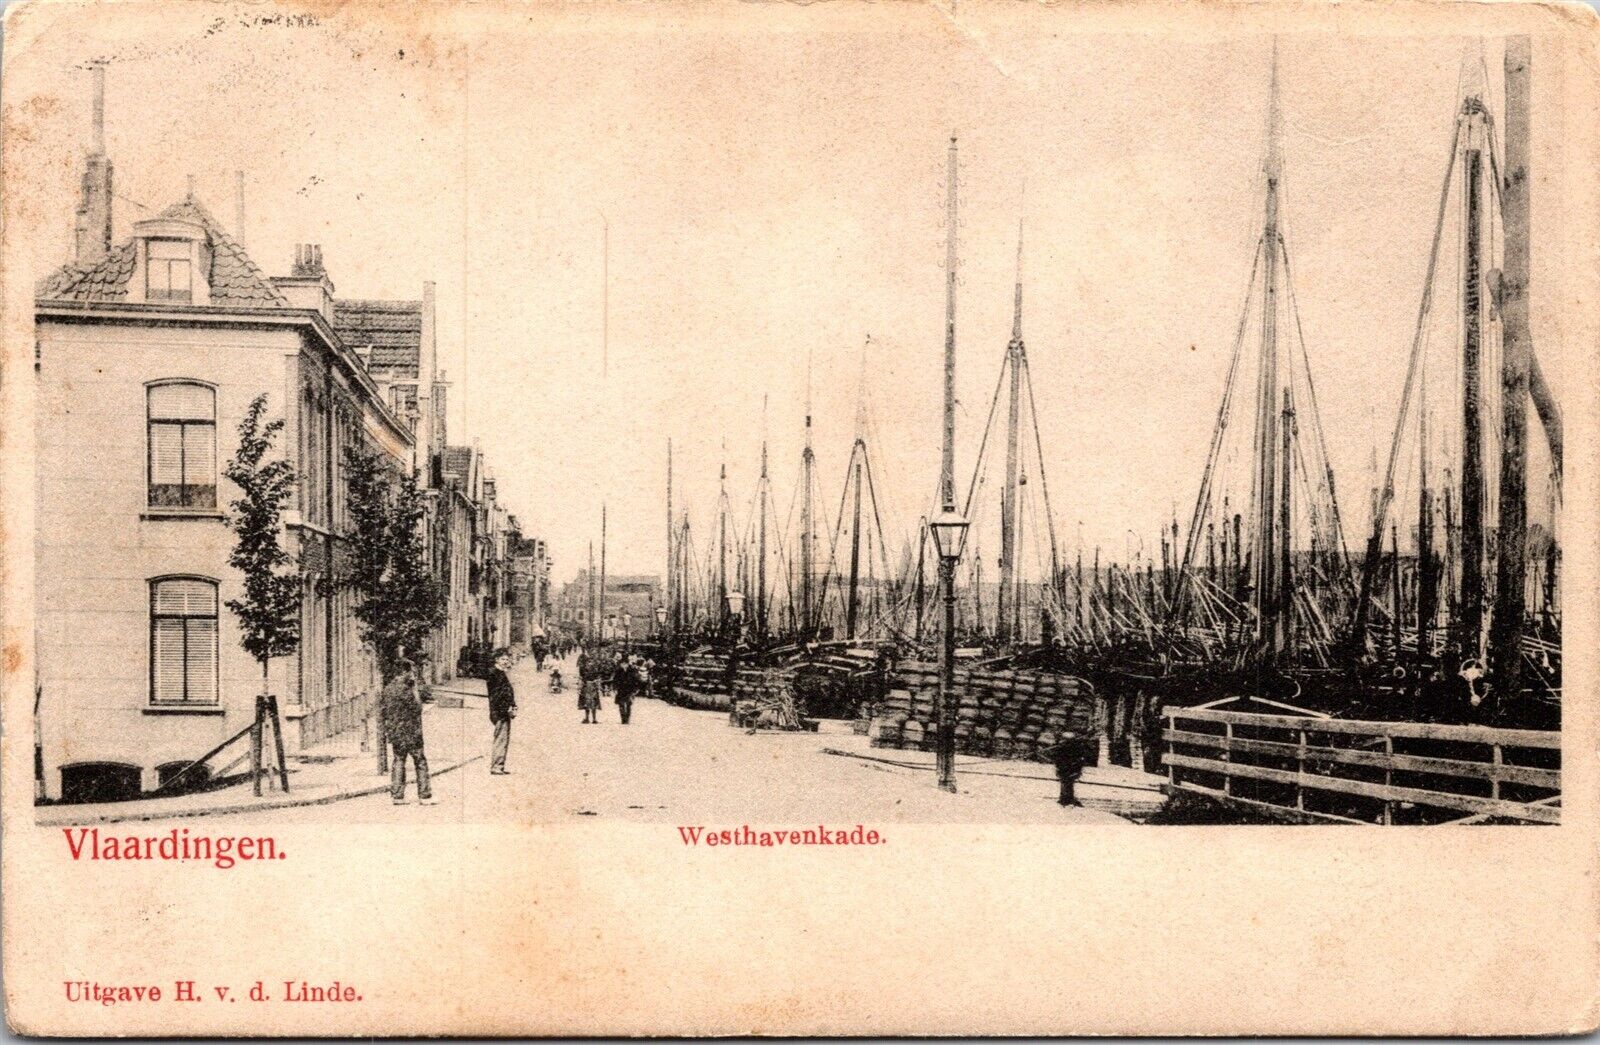 Vtg Vlaardingen Westhavenkade Holland Netherlands pre-1908 Old View Postcard